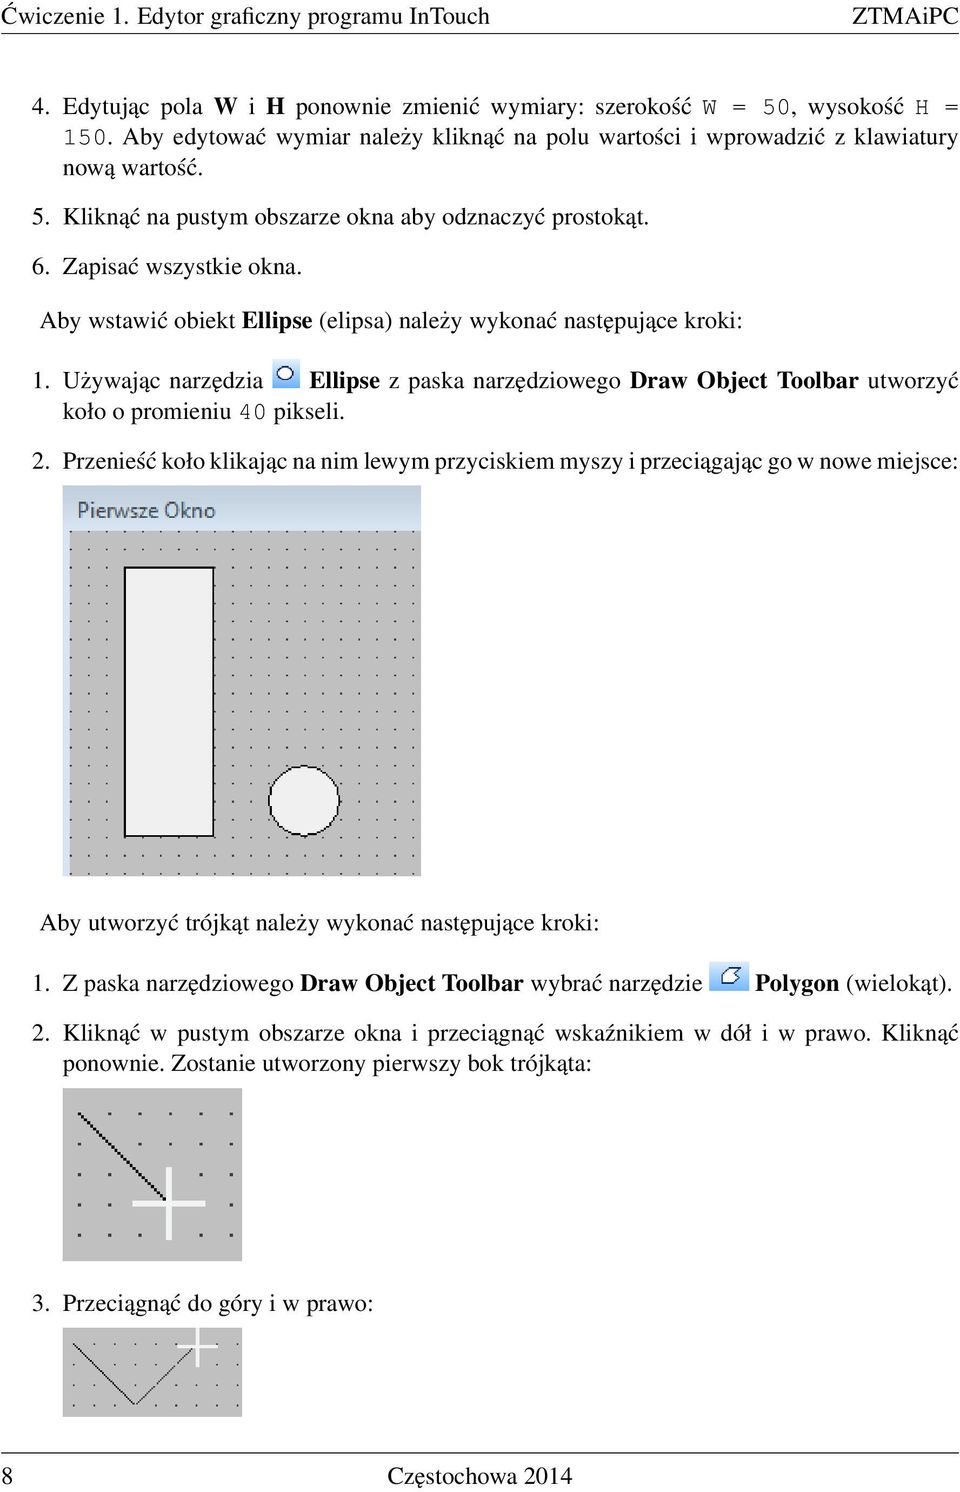 Aby wstawić obiekt Ellipse (elipsa) należy wykonać następujące kroki: 1. Używając narzędzia Ellipse z paska narzędziowego Draw Object Toolbar utworzyć koło o promieniu 40 pikseli. 2.